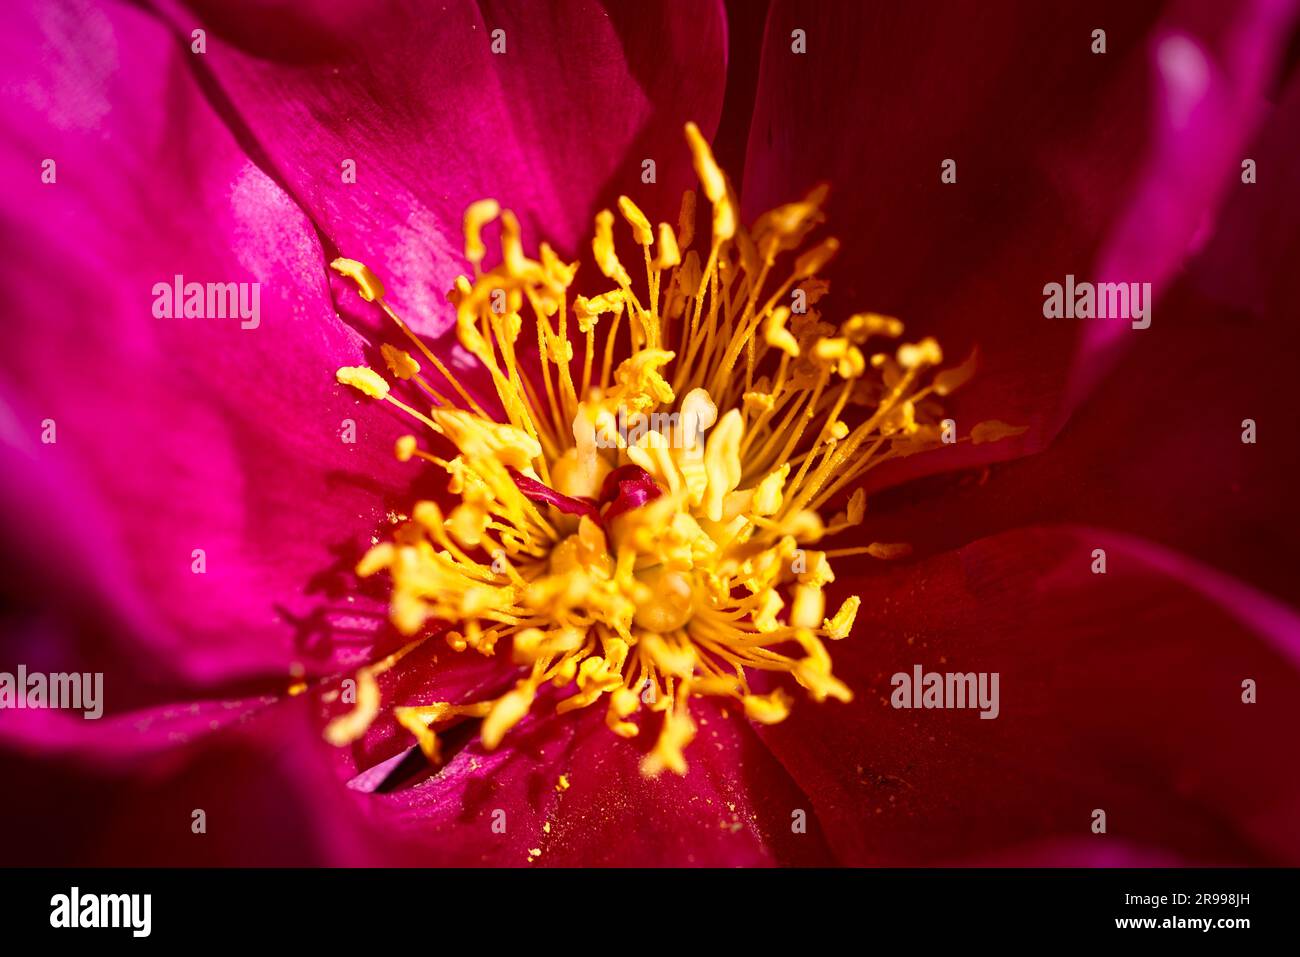 Nahaufnahme der rosa Blüte mit gelben Stäben der gewöhnlichen Pfingstrose im Sonnenlicht Stockfoto